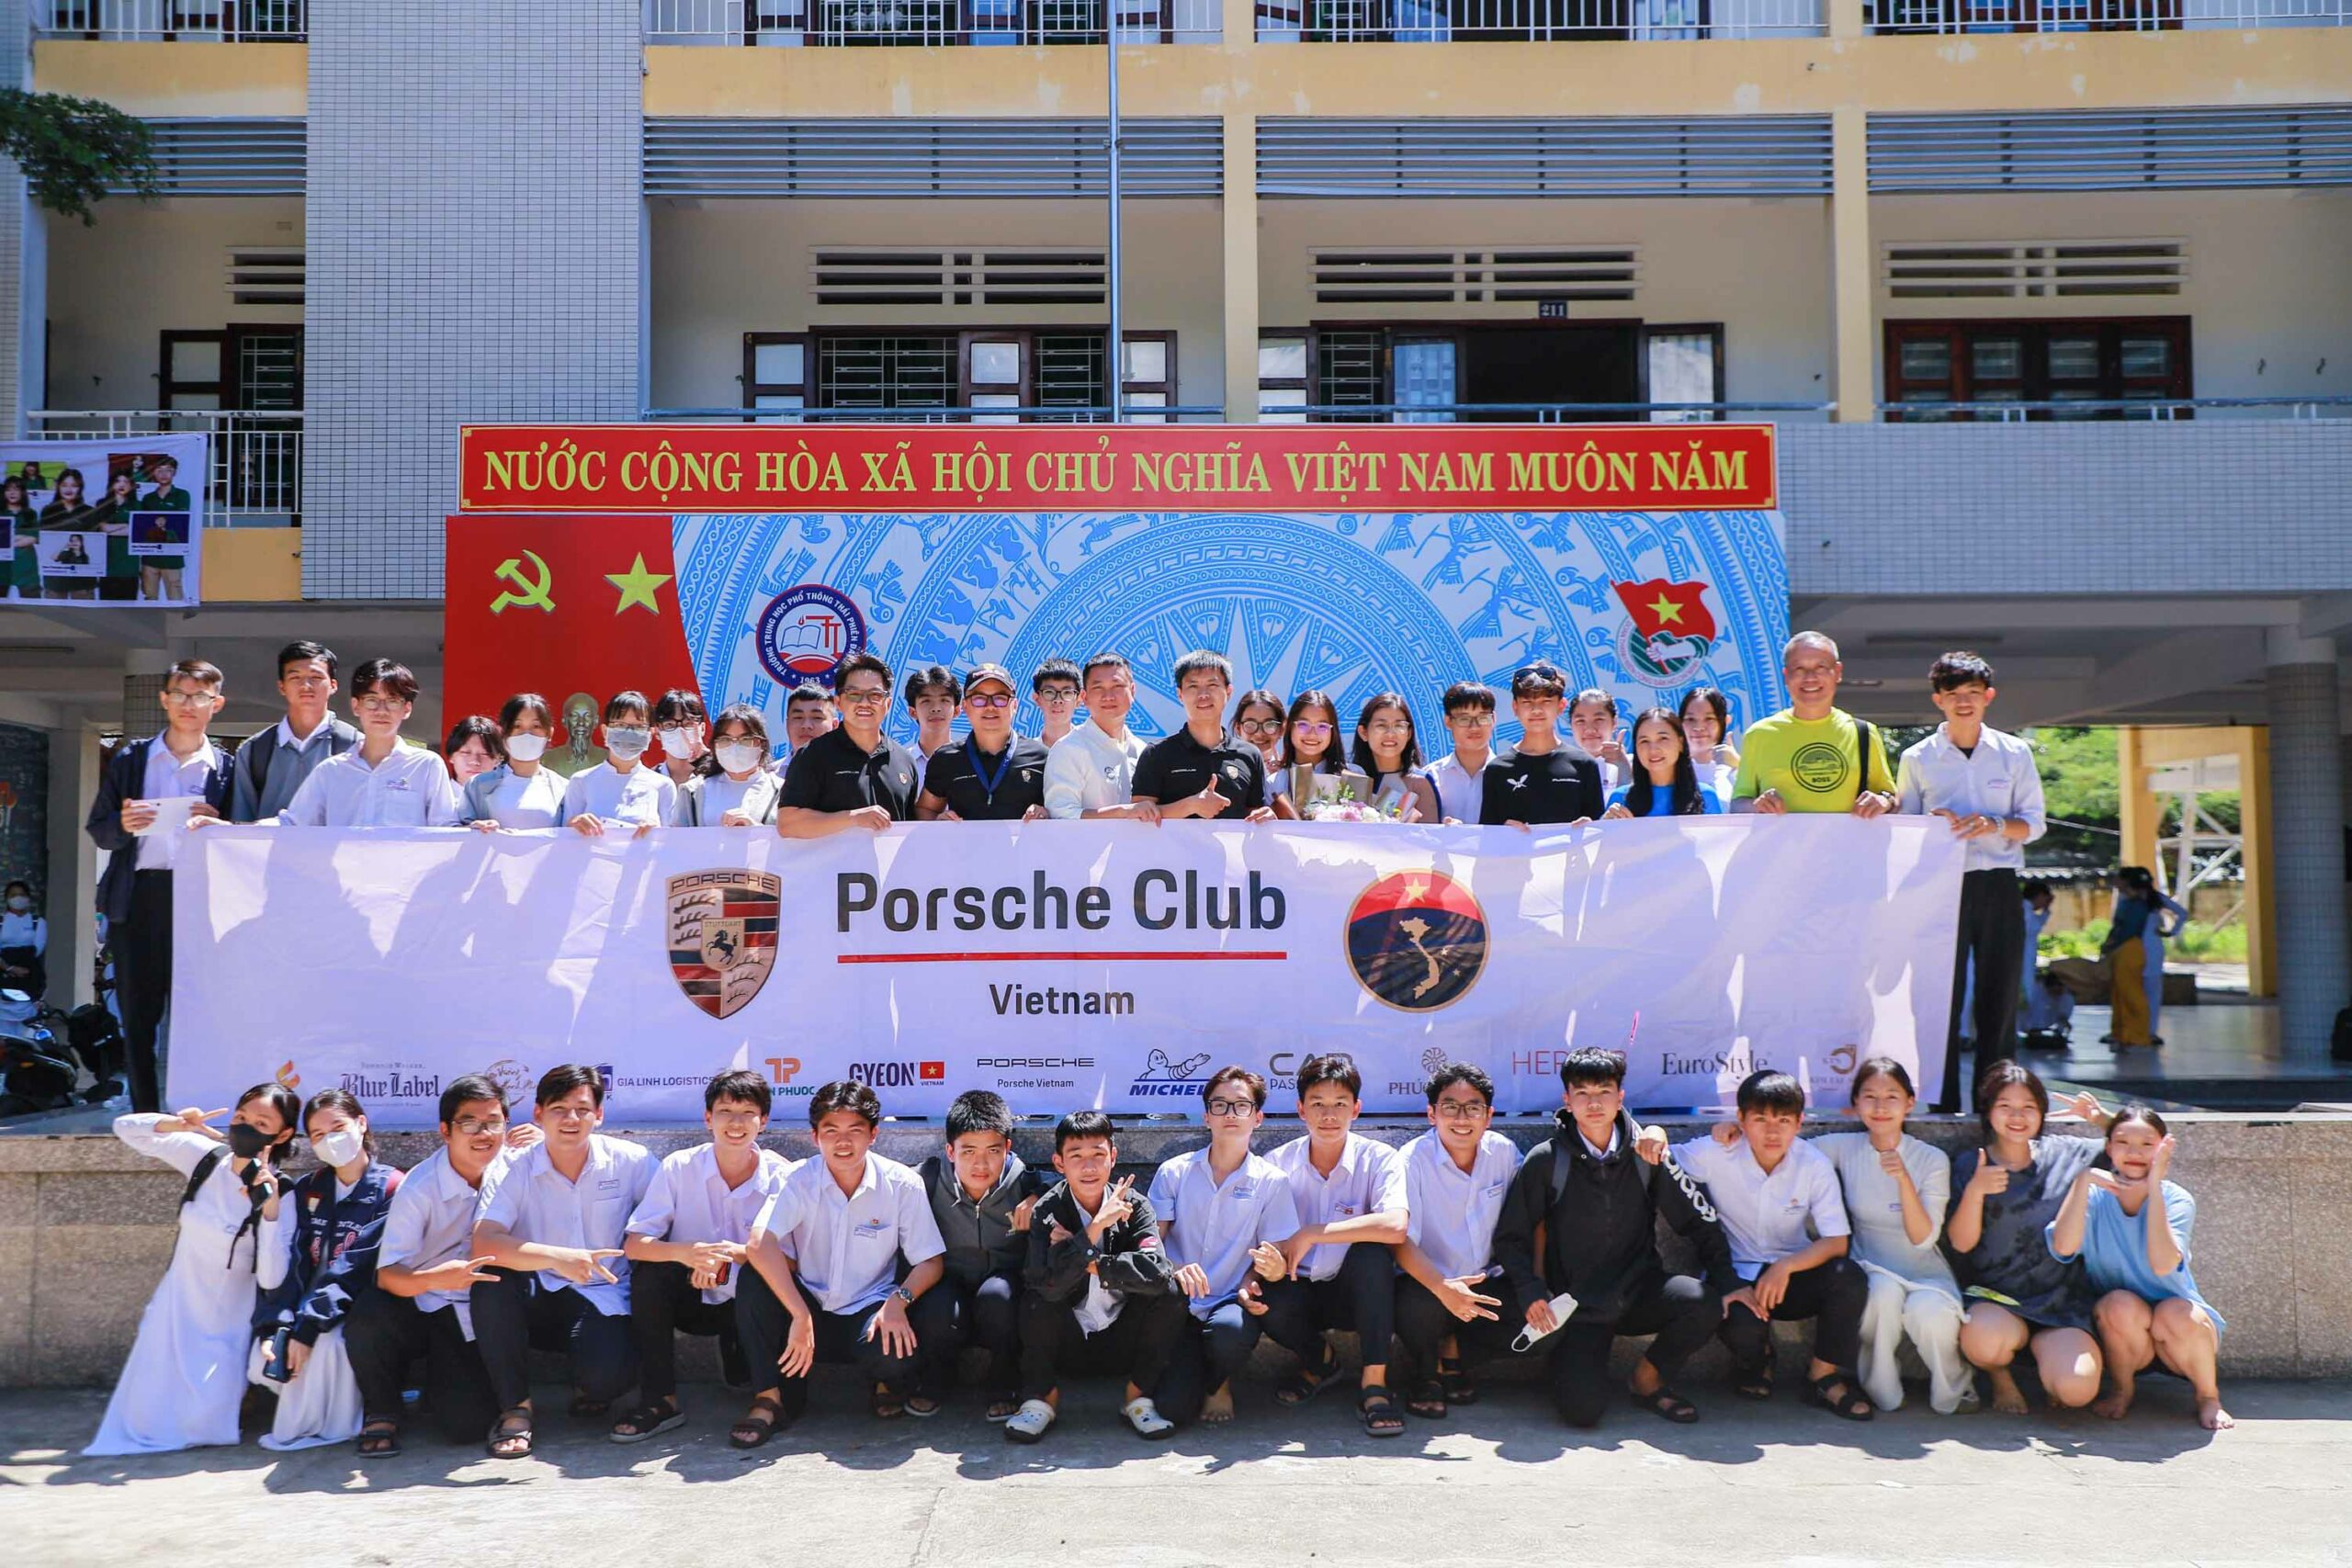 [4th Anniversary Porsche Club Vietnam] Trao 20 học bổng tại trường THPT Thái Phiên và THCS Chu Văn An